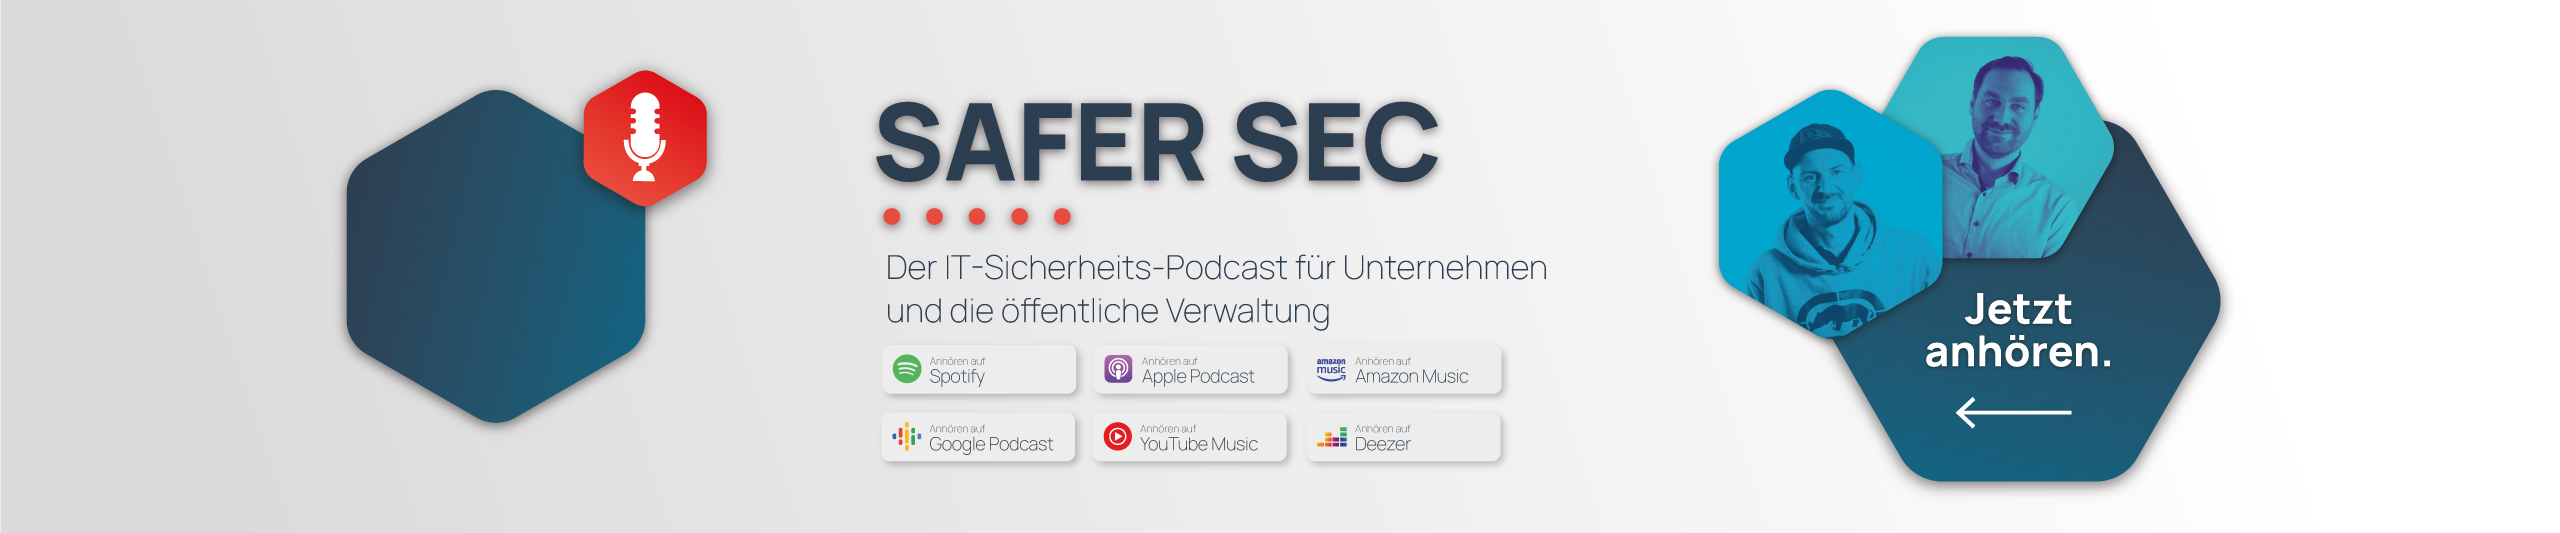 KUPPER IT - Safer Sec Podcast für Informationssicherheit